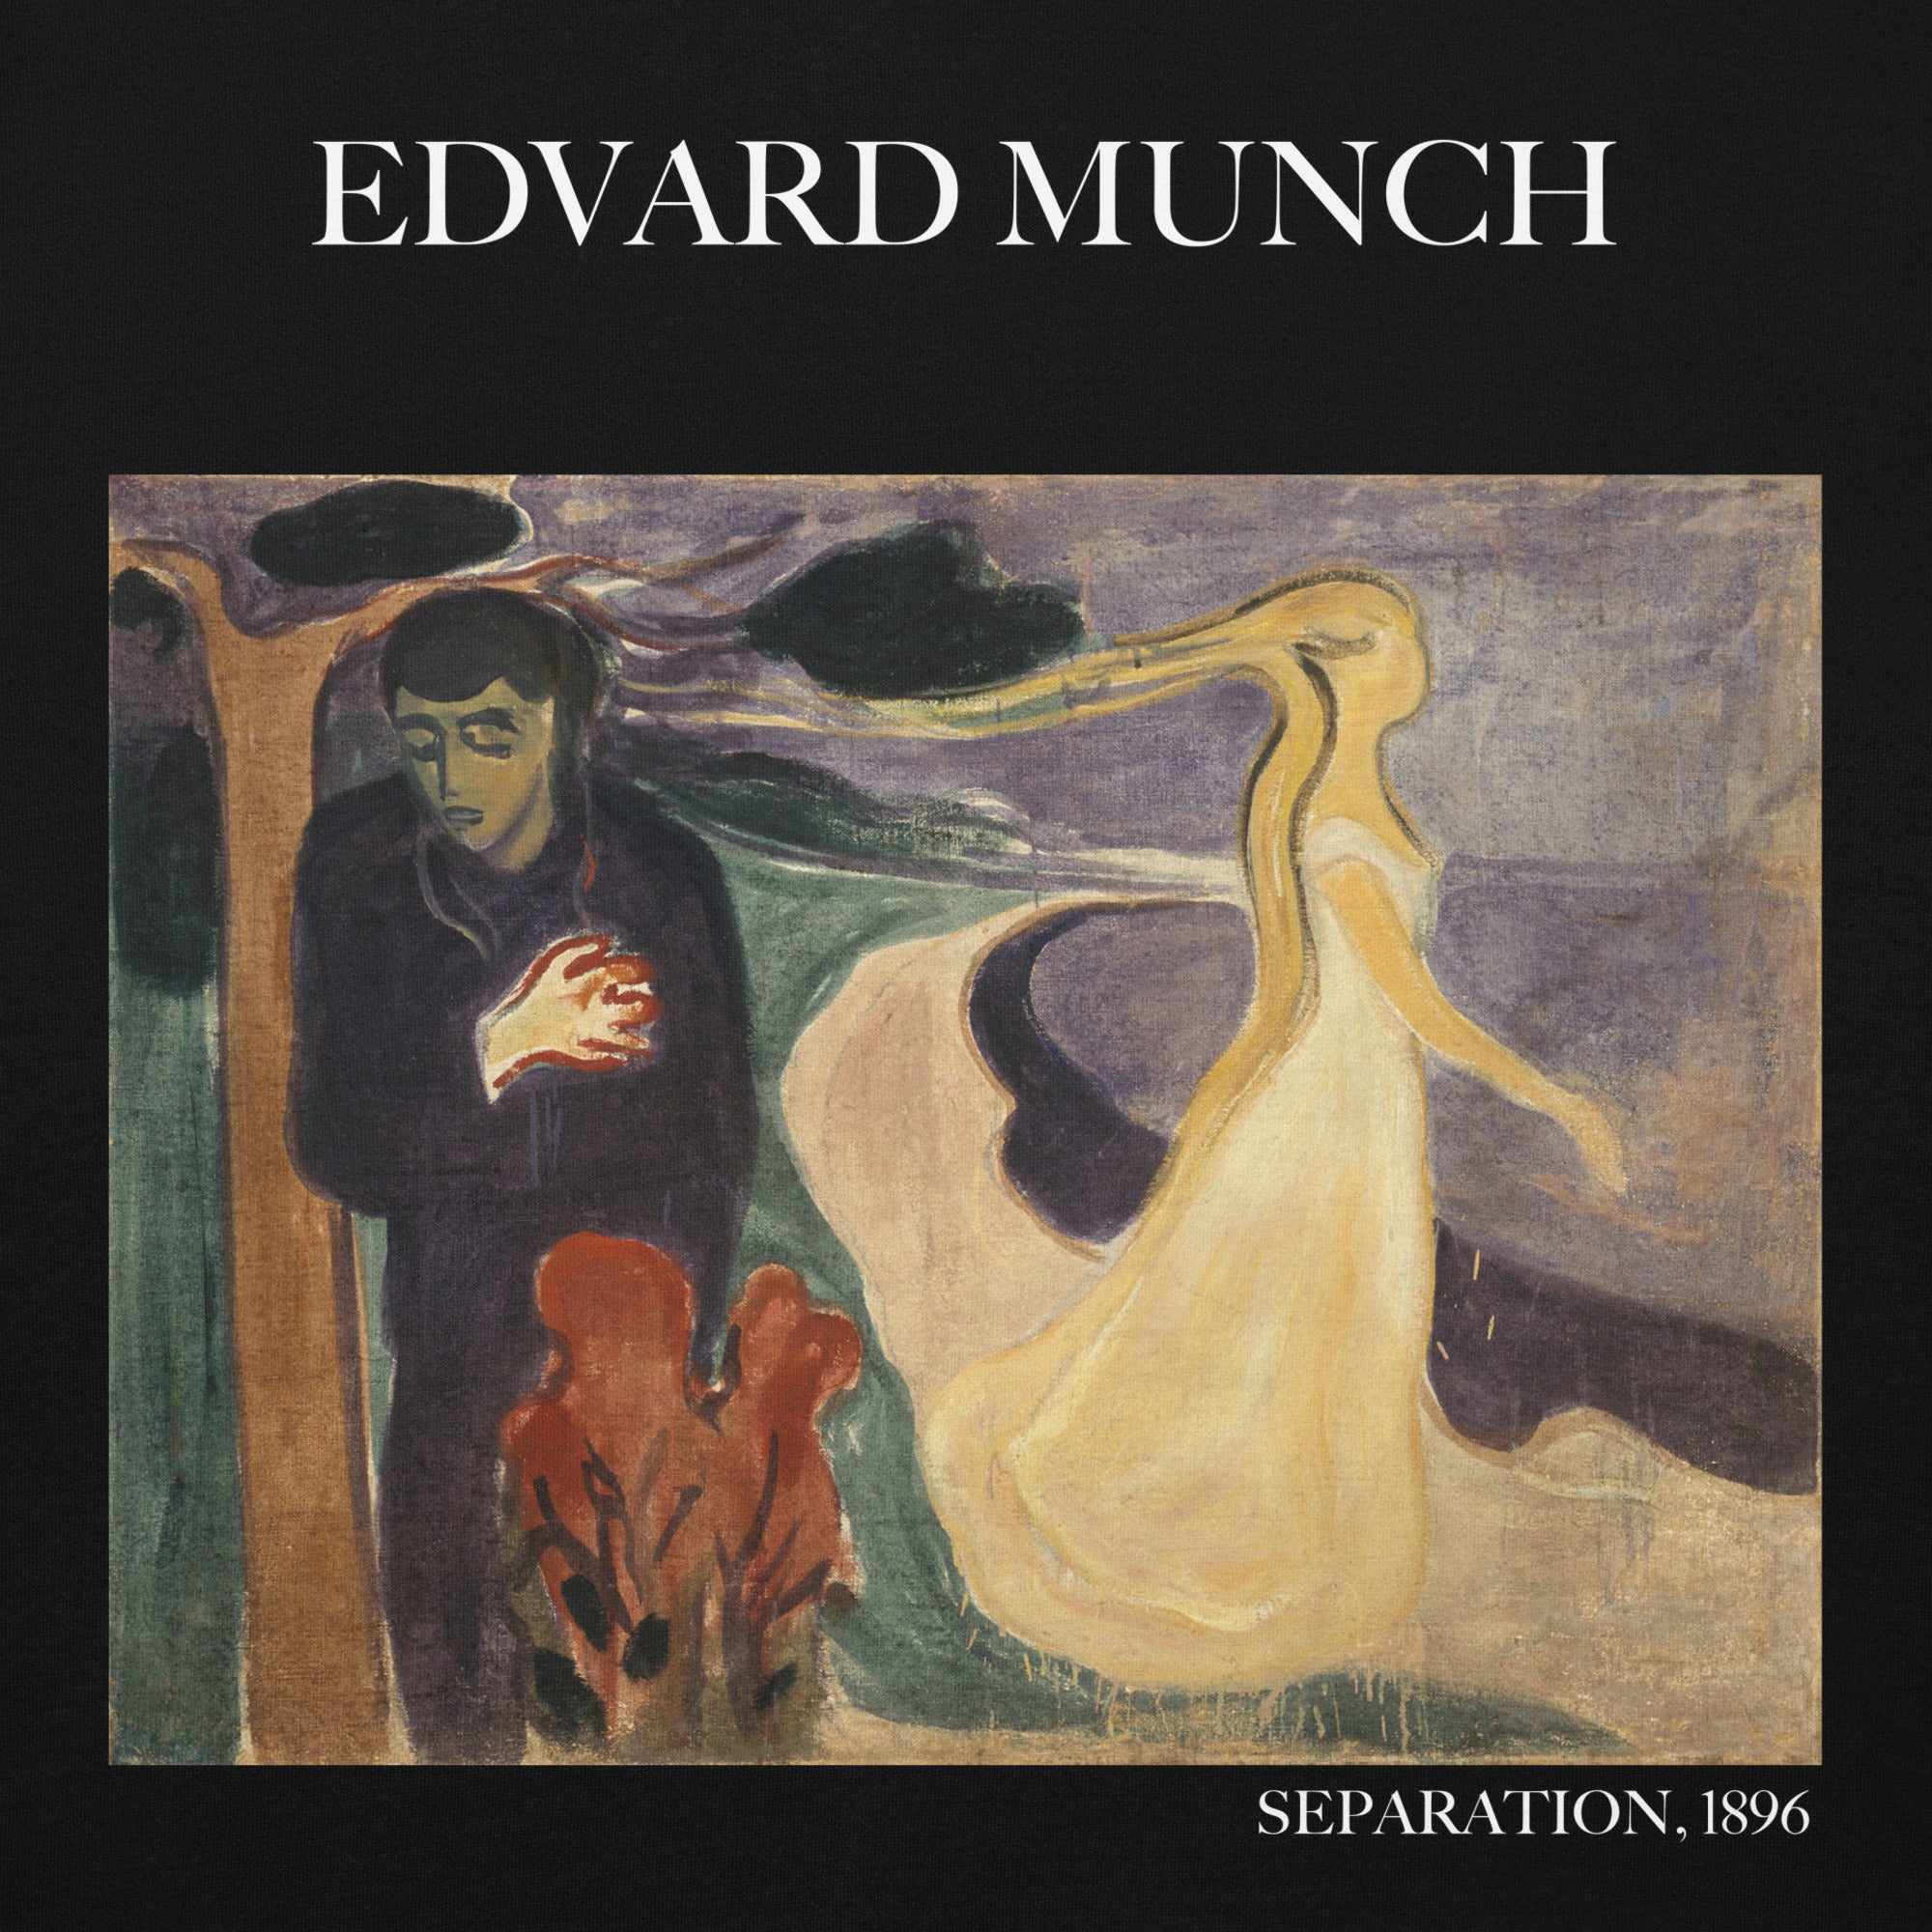 Edvard Munch 'Separation' Berühmtes Gemälde Hoodie | Unisex Premium Kunst Hoodie